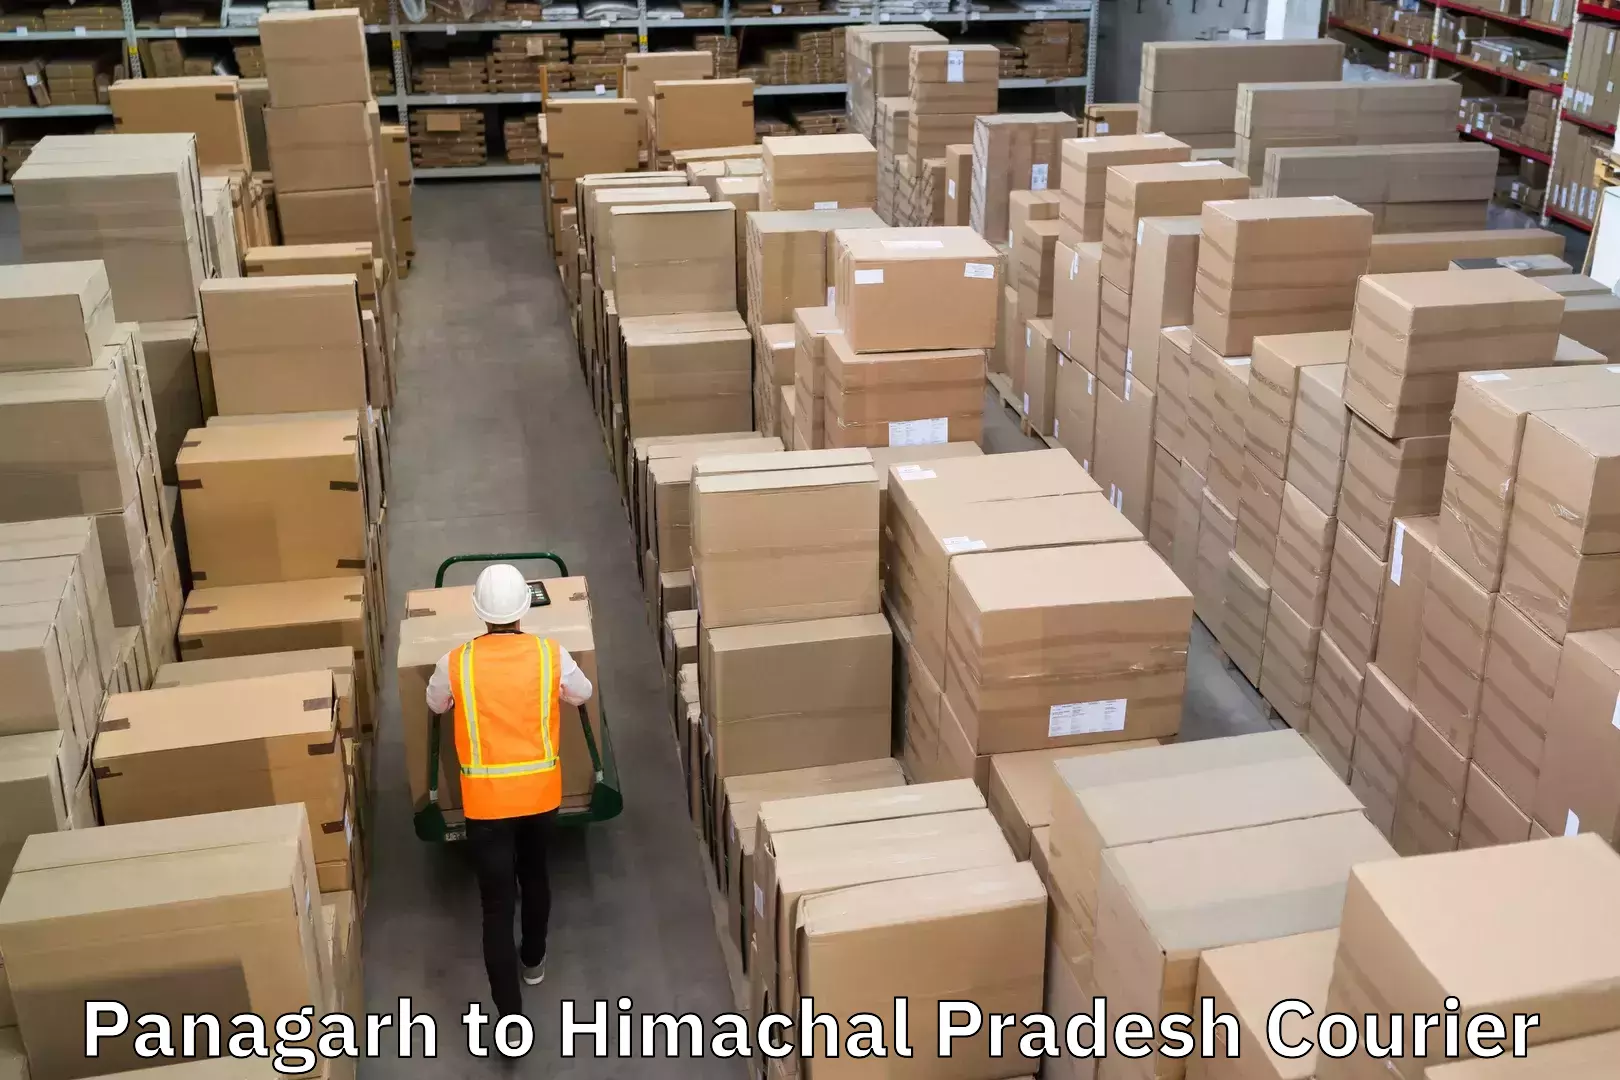 Express logistics service Panagarh to Himachal Pradesh